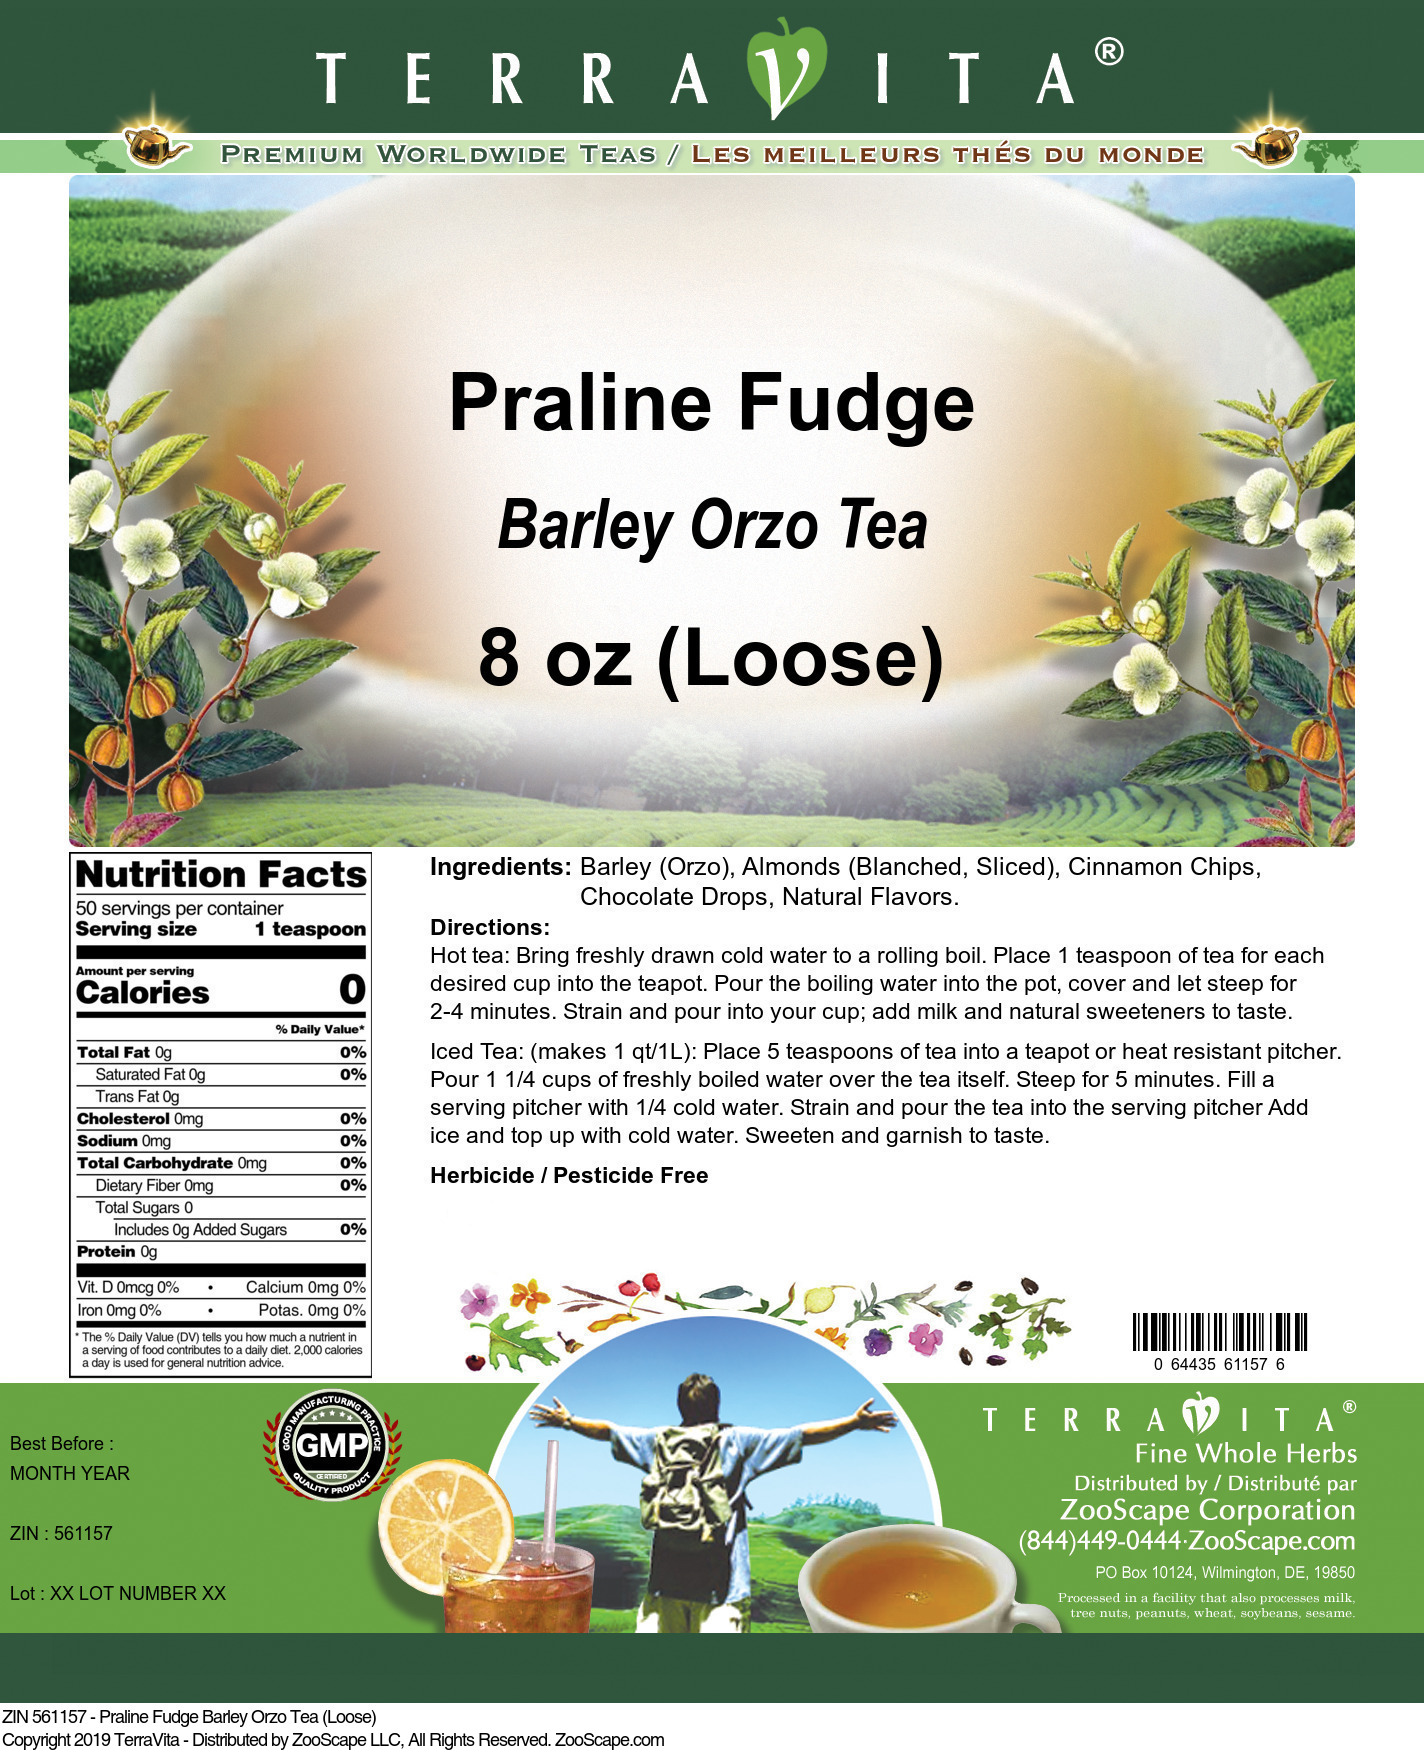 Praline Fudge Barley Orzo Tea (Loose) - Label